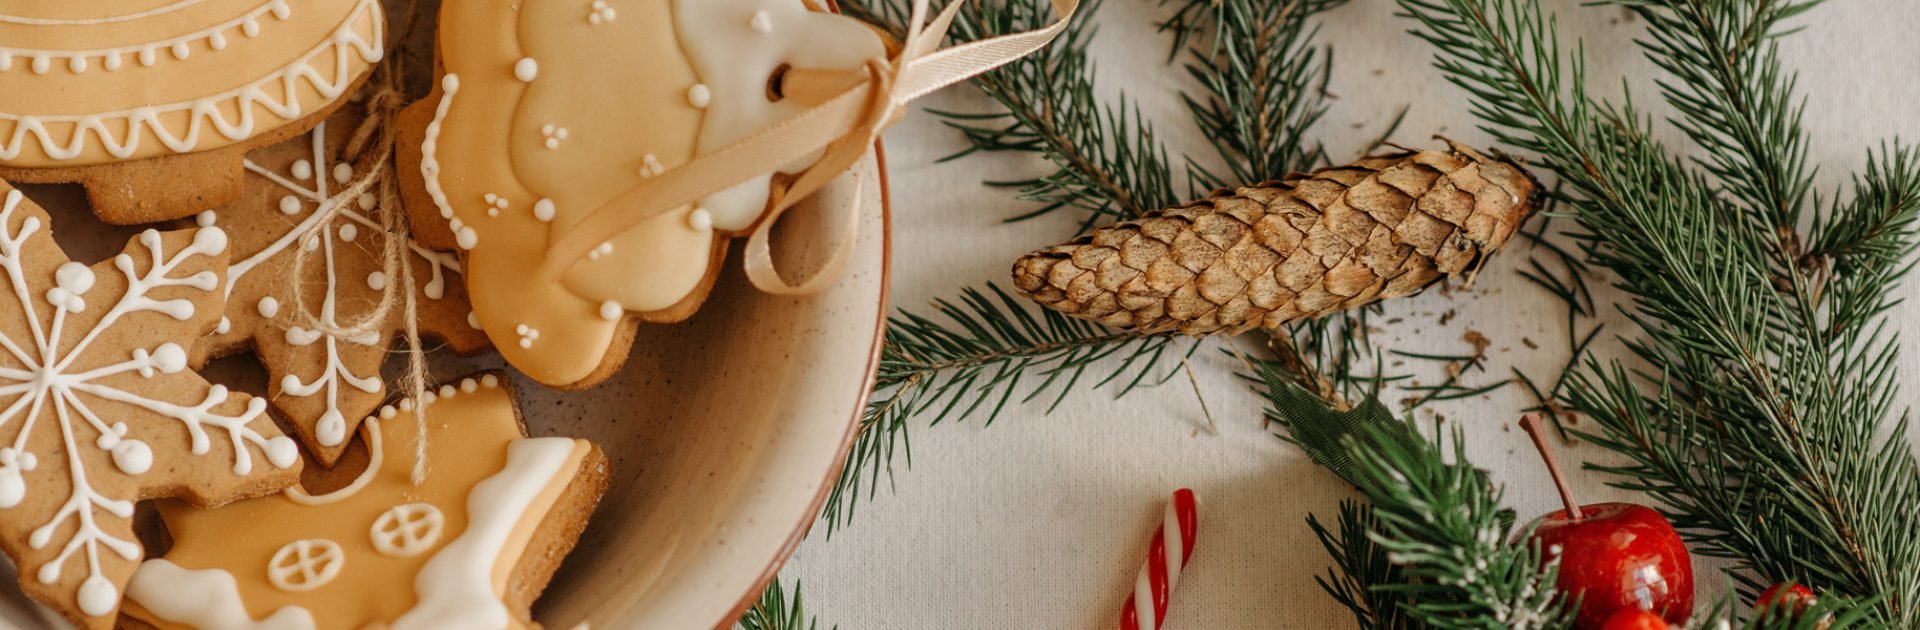 Eigen kerstkoekjes maken | Kerstdecoratie | Eigenhuis Keukens